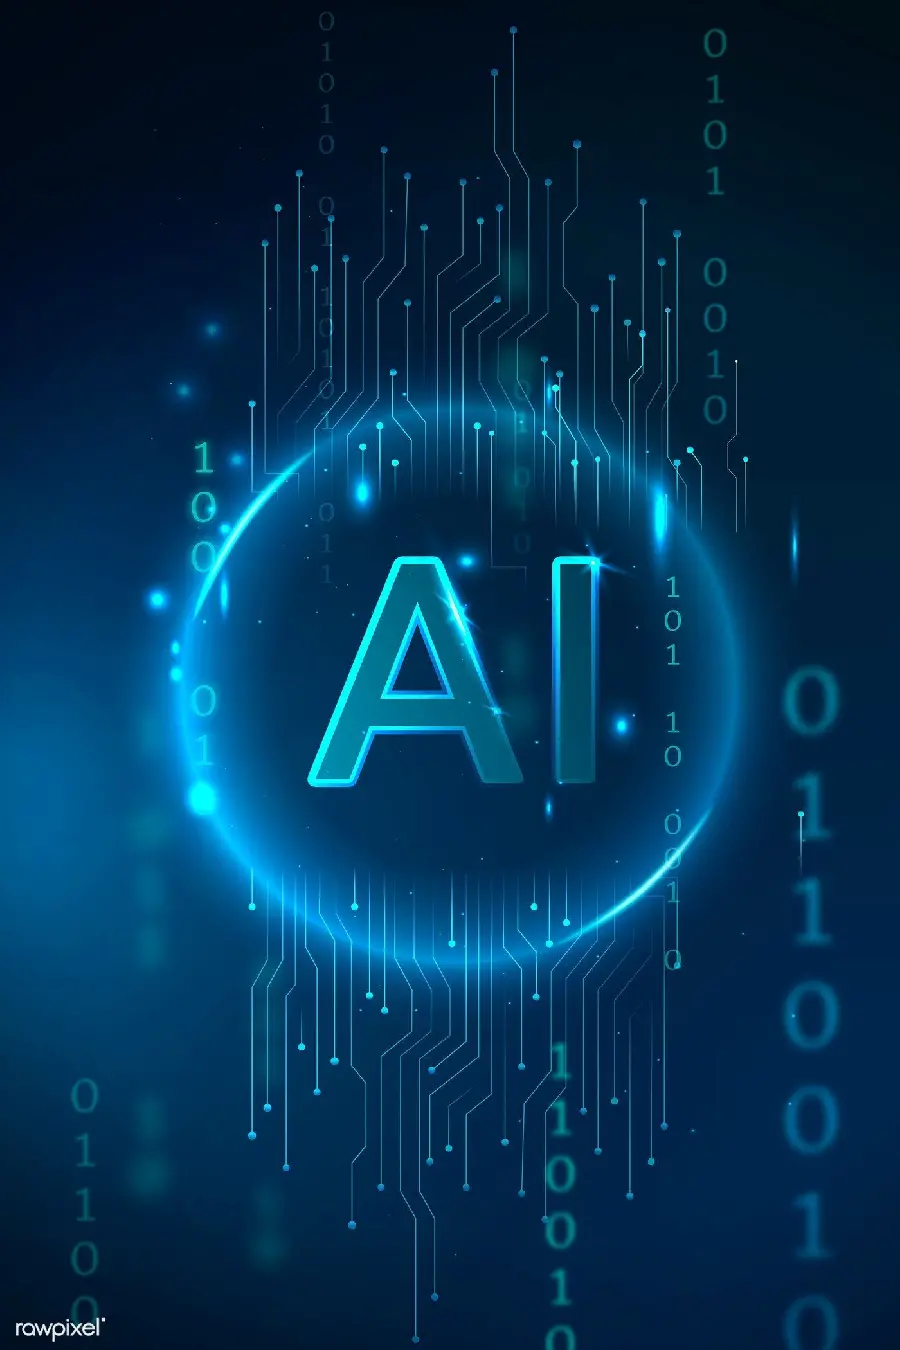 شیک ترین والپیپر لوگوی AI تکنولوژی هوش مصنوعی با کیفیت Hd